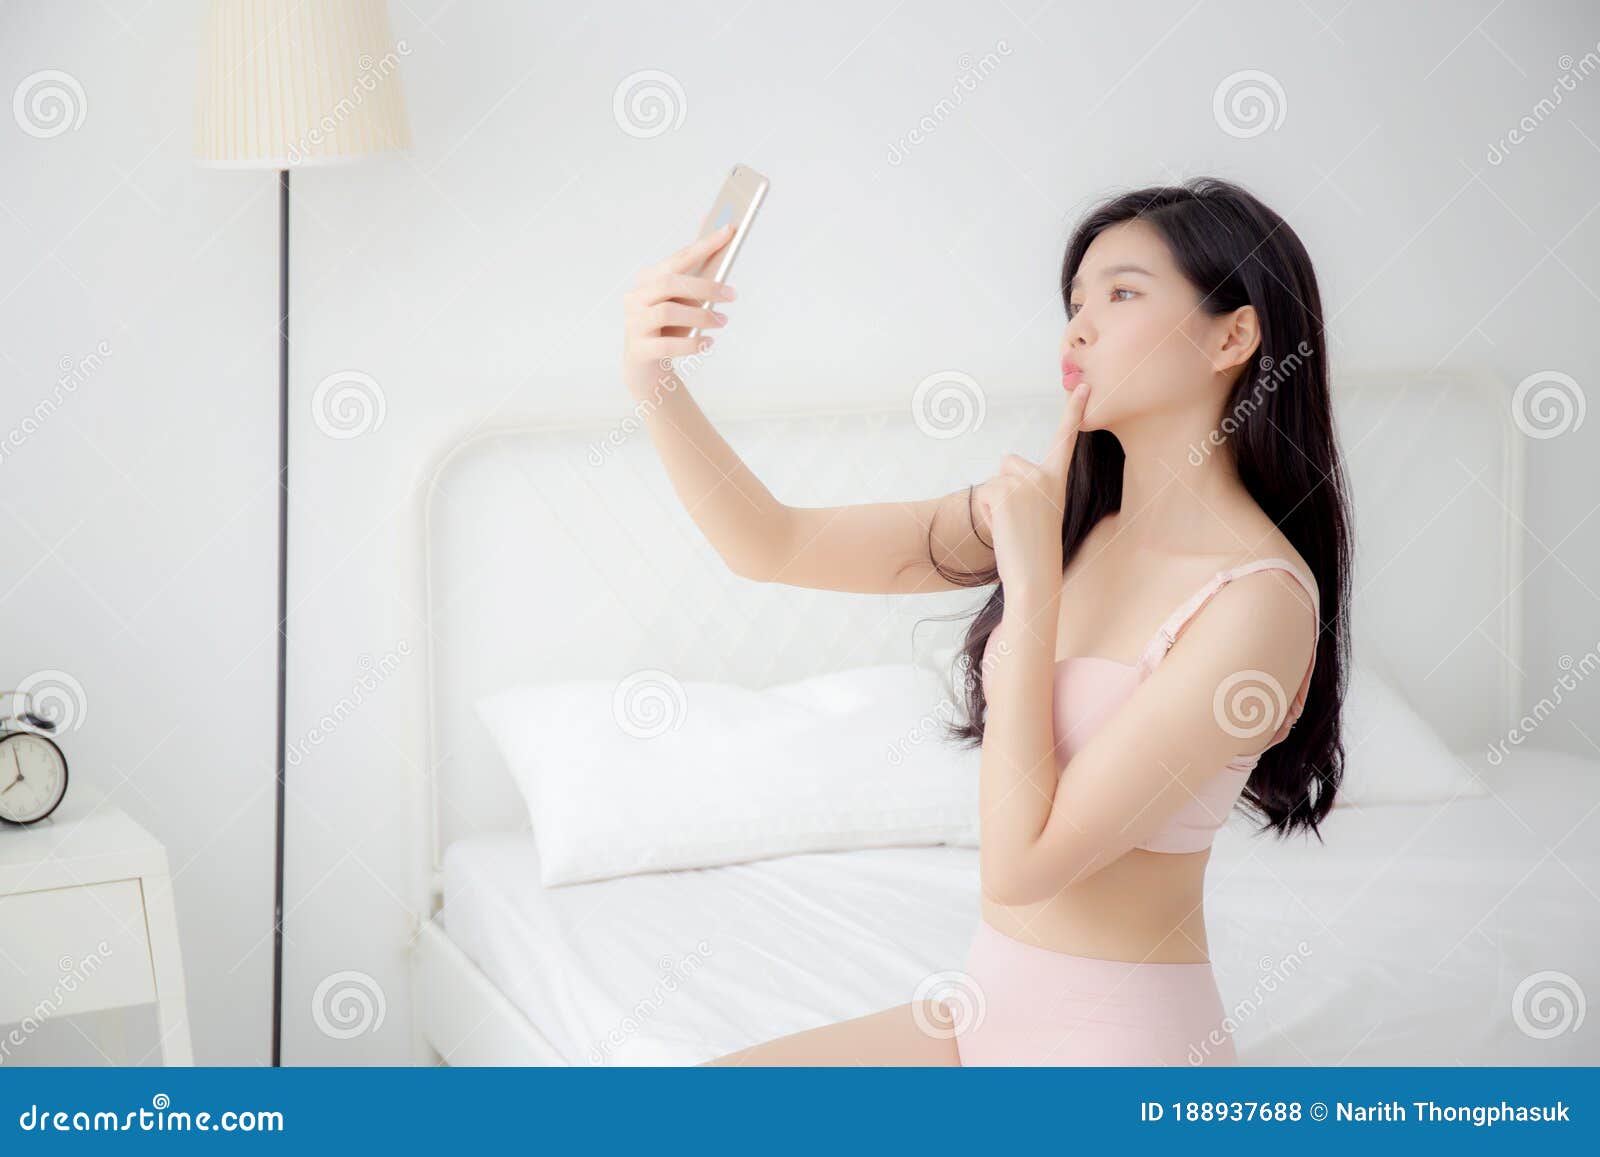 Frau in unterwäsche selfie